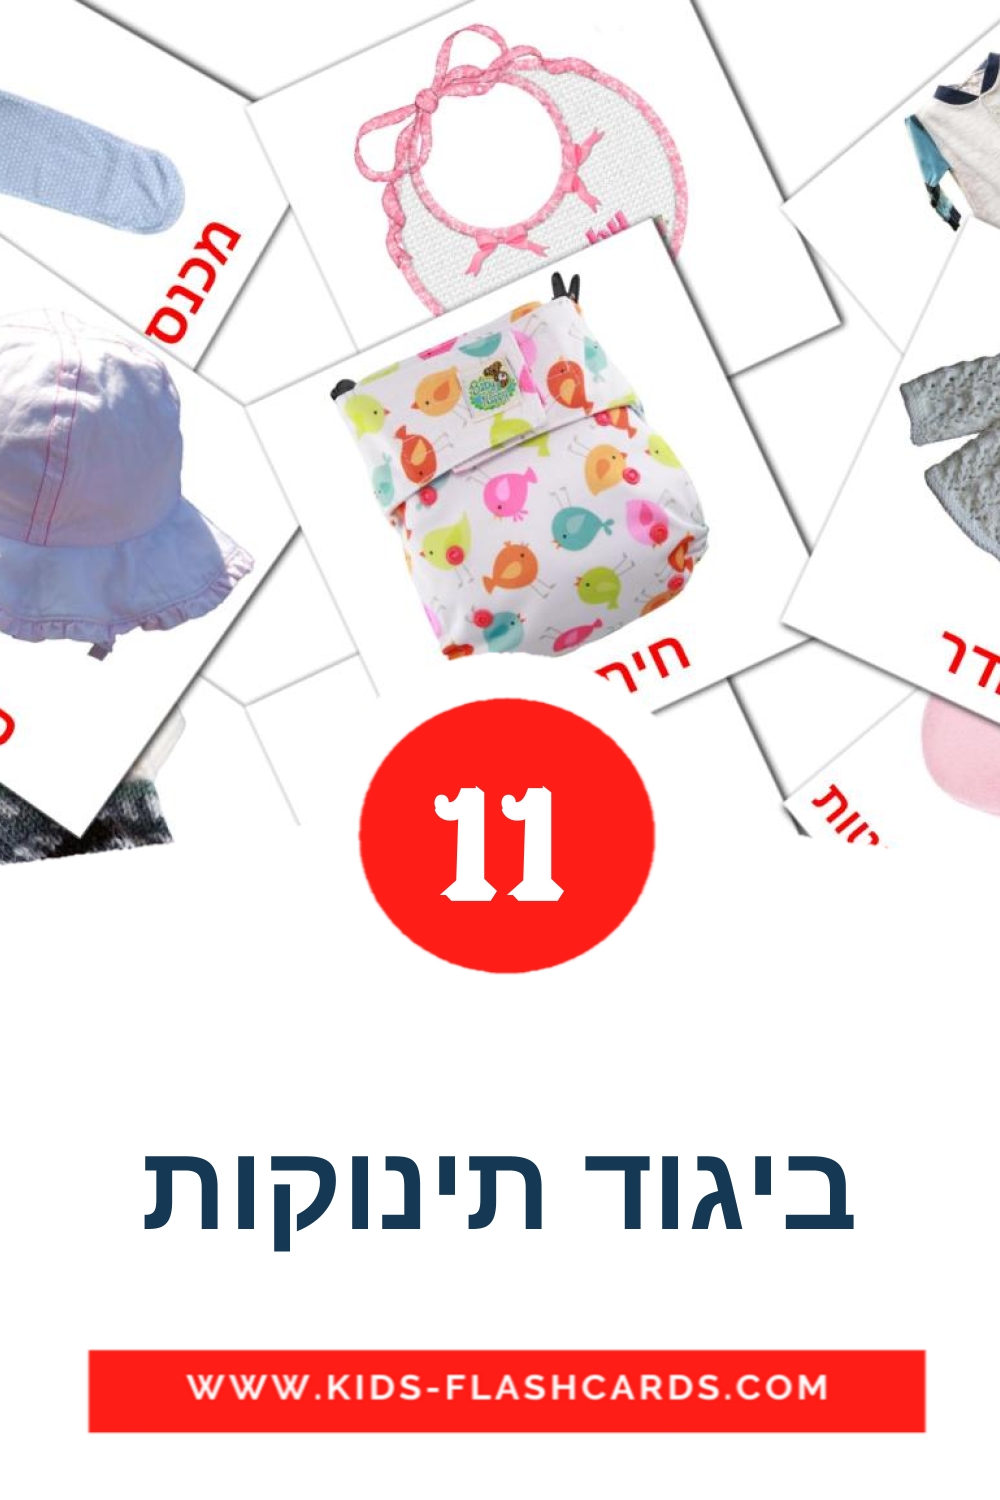 11 cartes illustrées de ביגוד תינוקות pour la maternelle en hébreu